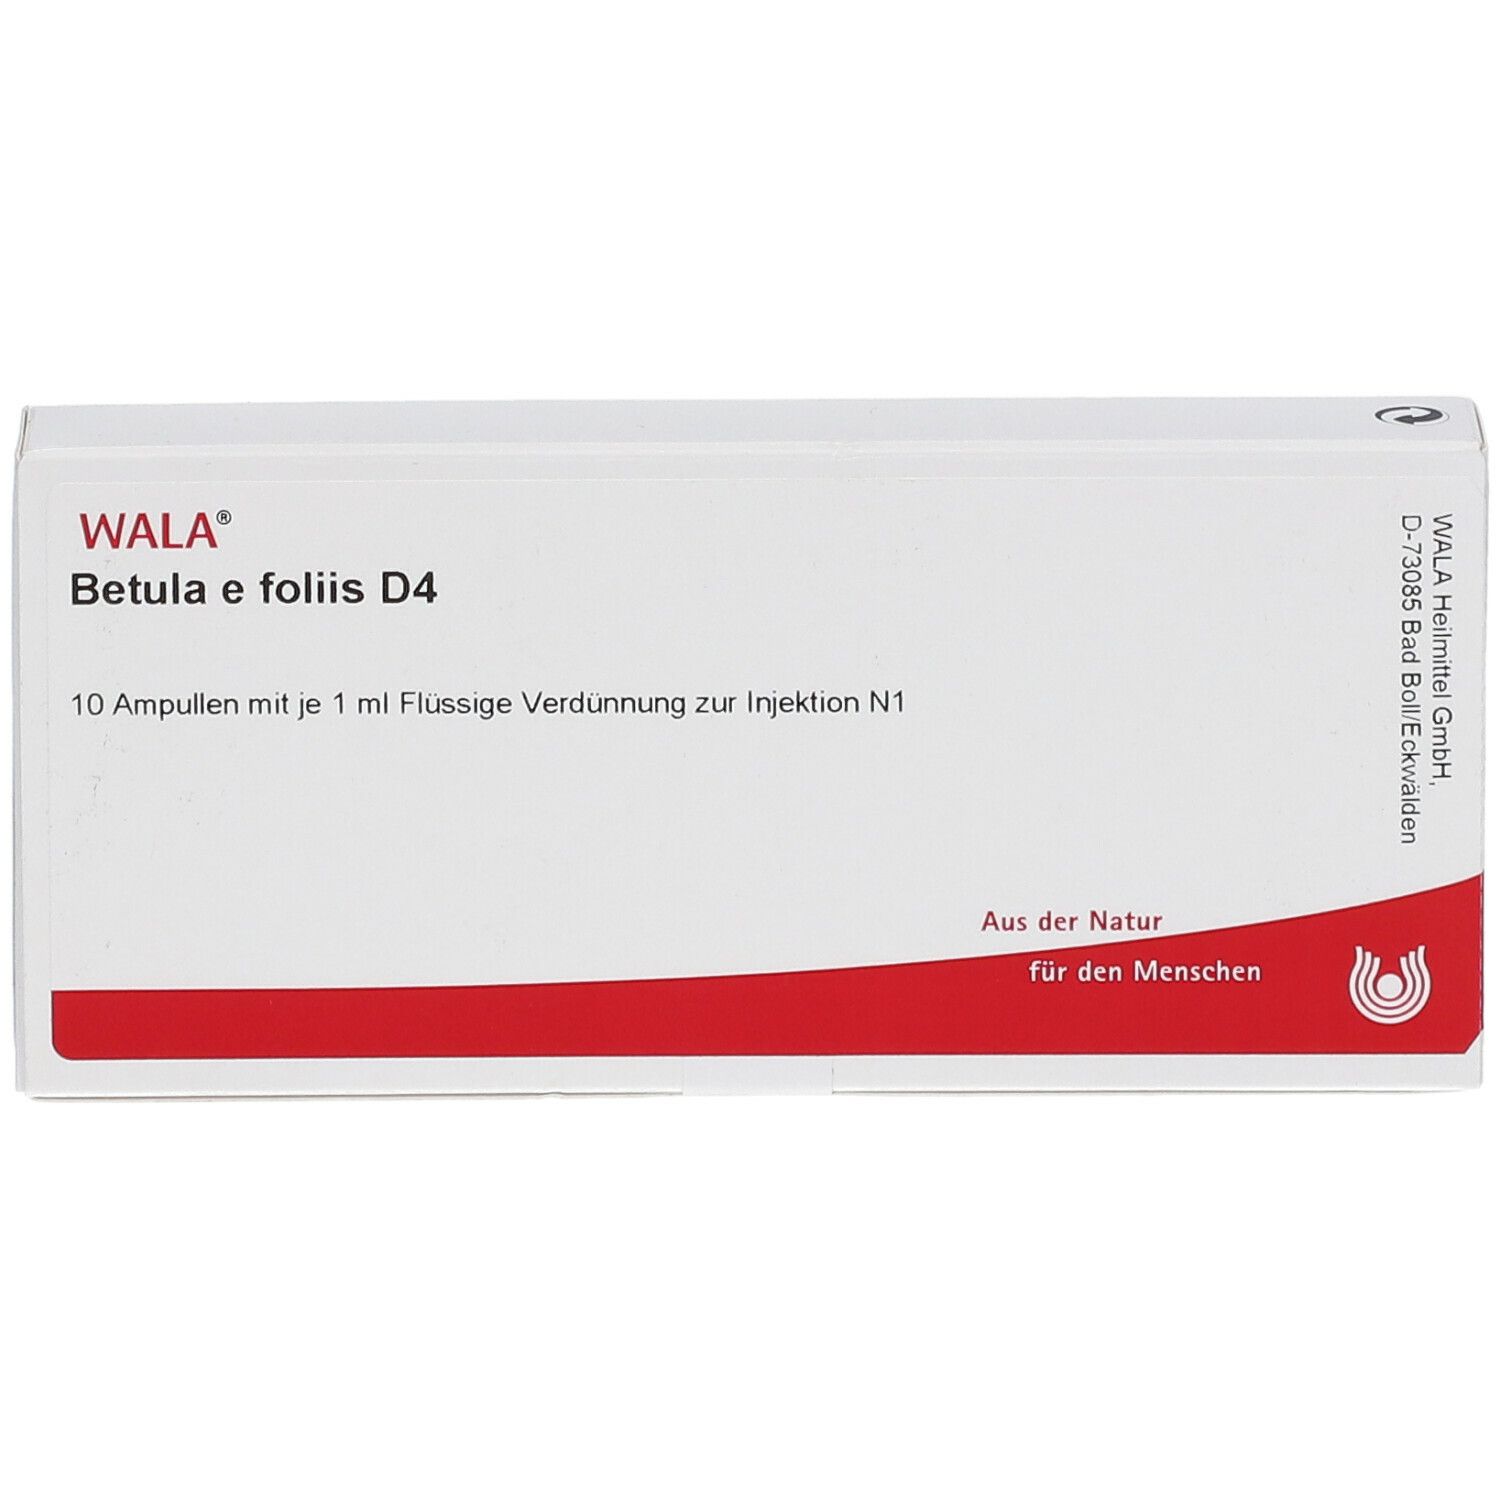 WALA® Betula e foliis D 4